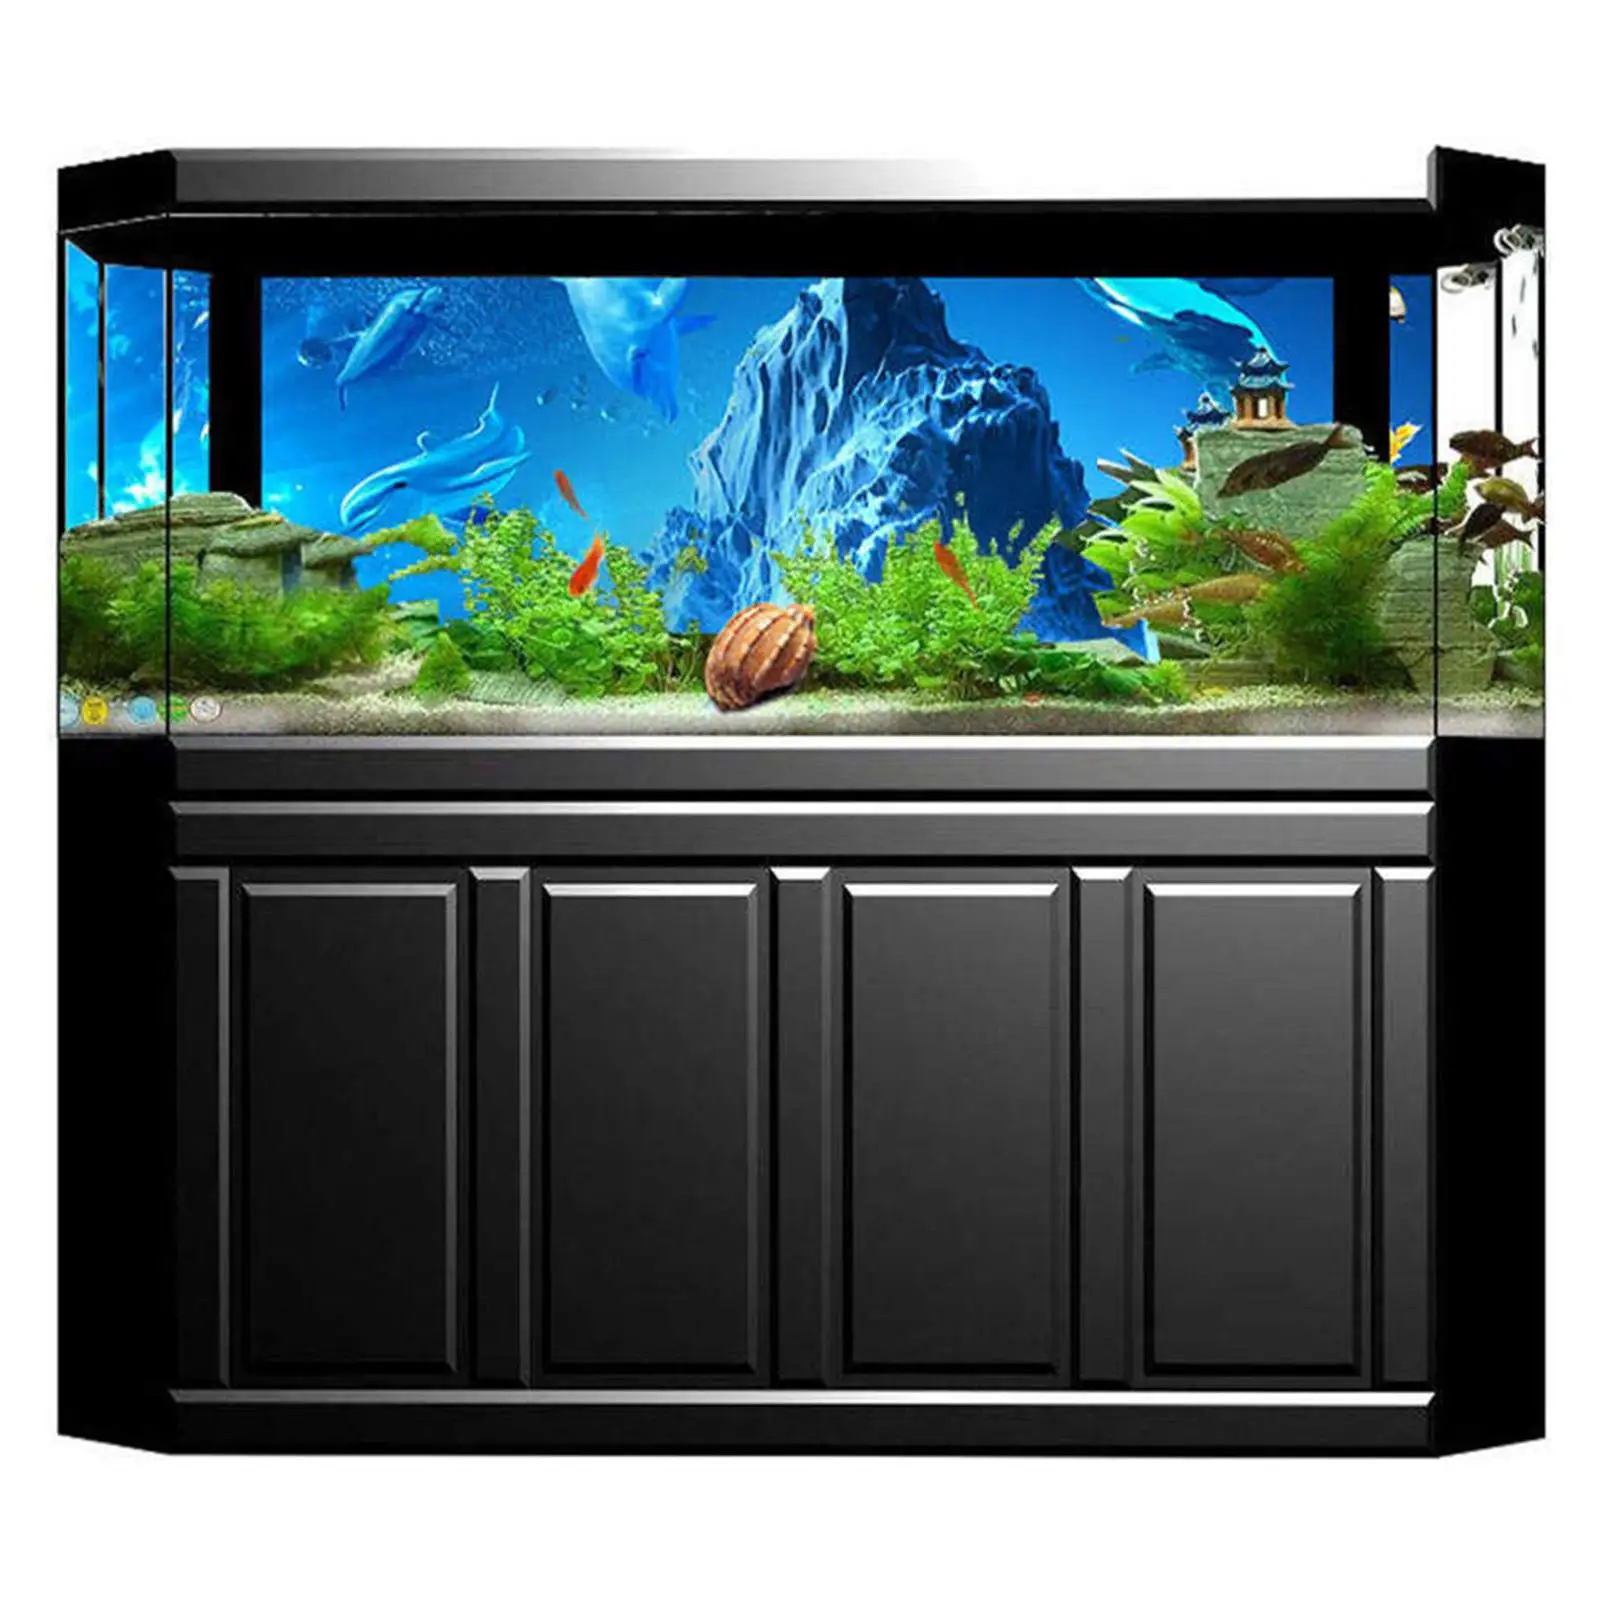 Aquarium Background Poster Painting Landscape Fish Tank for Aquarium Fish Tank Decoration